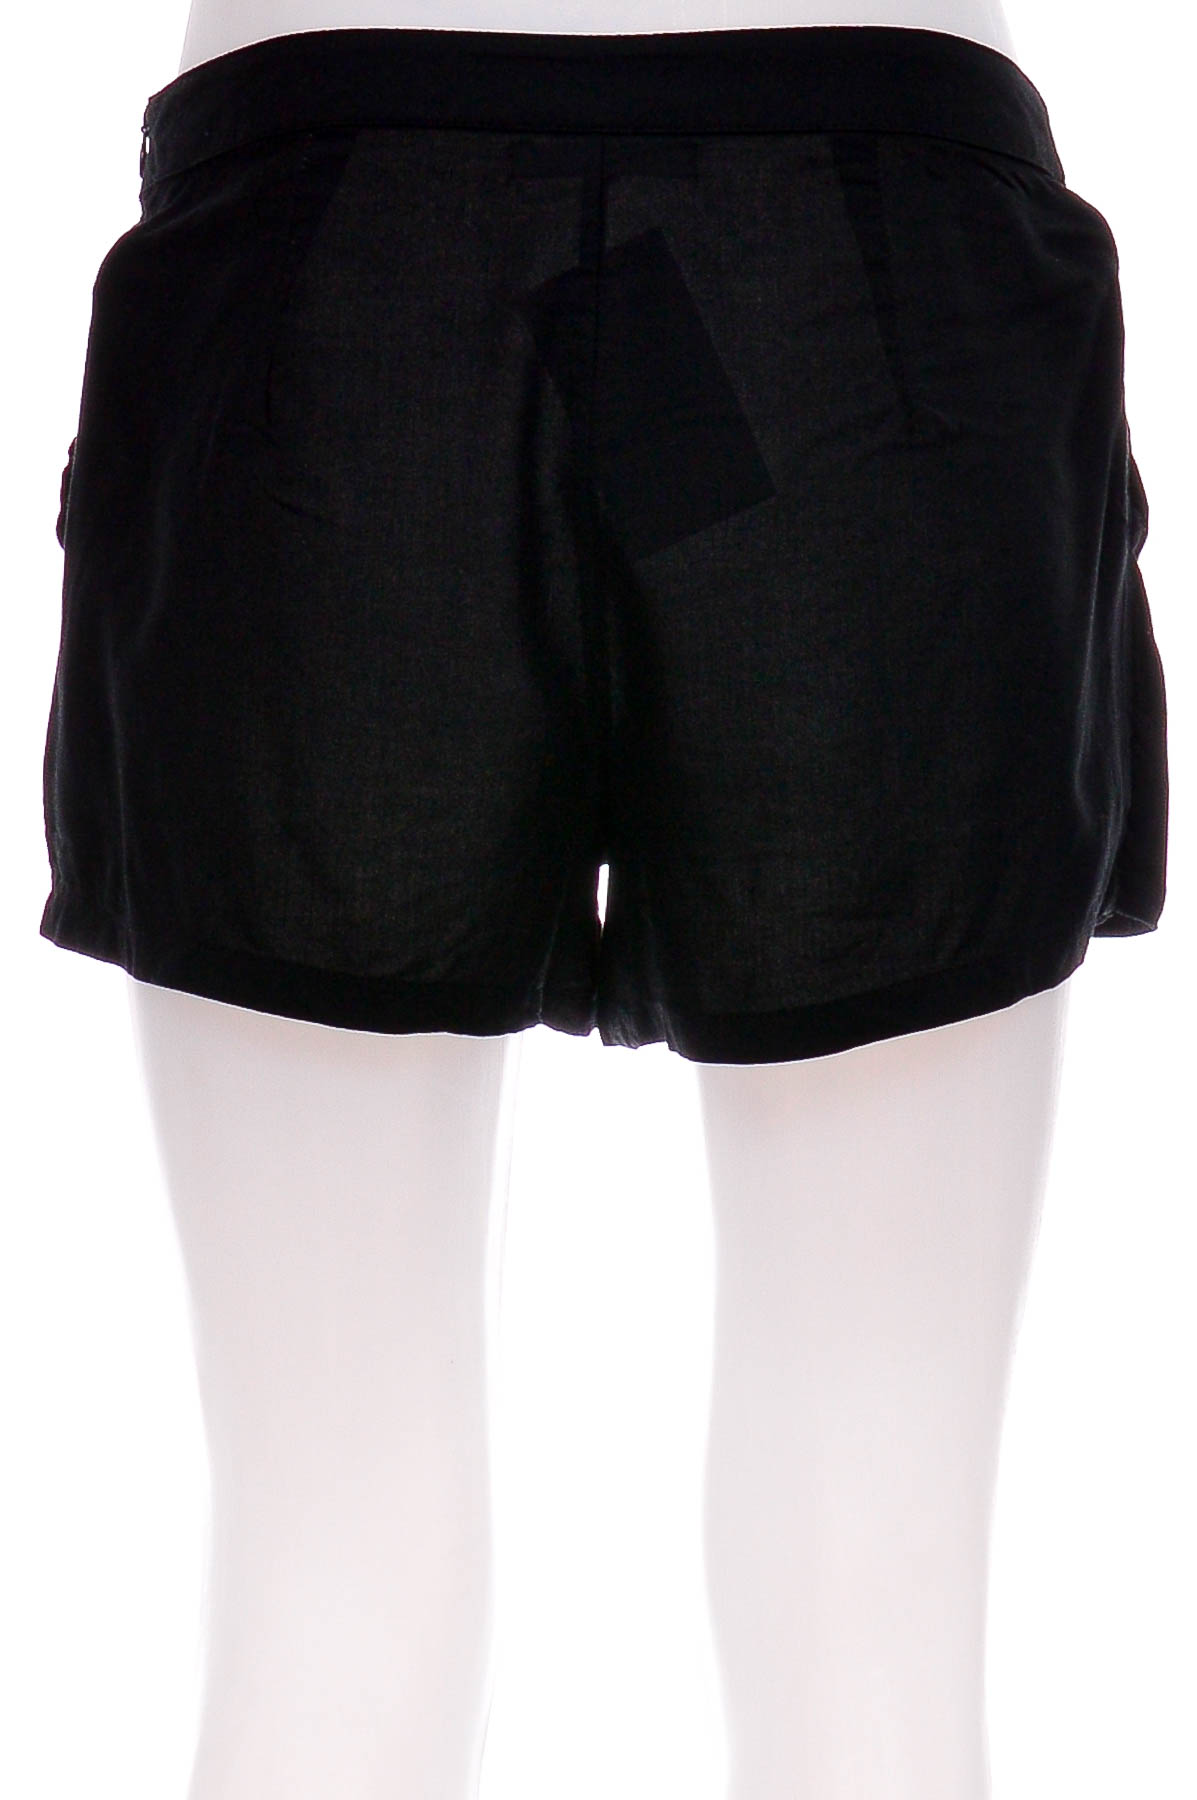 Female shorts - Clockhouse - 1